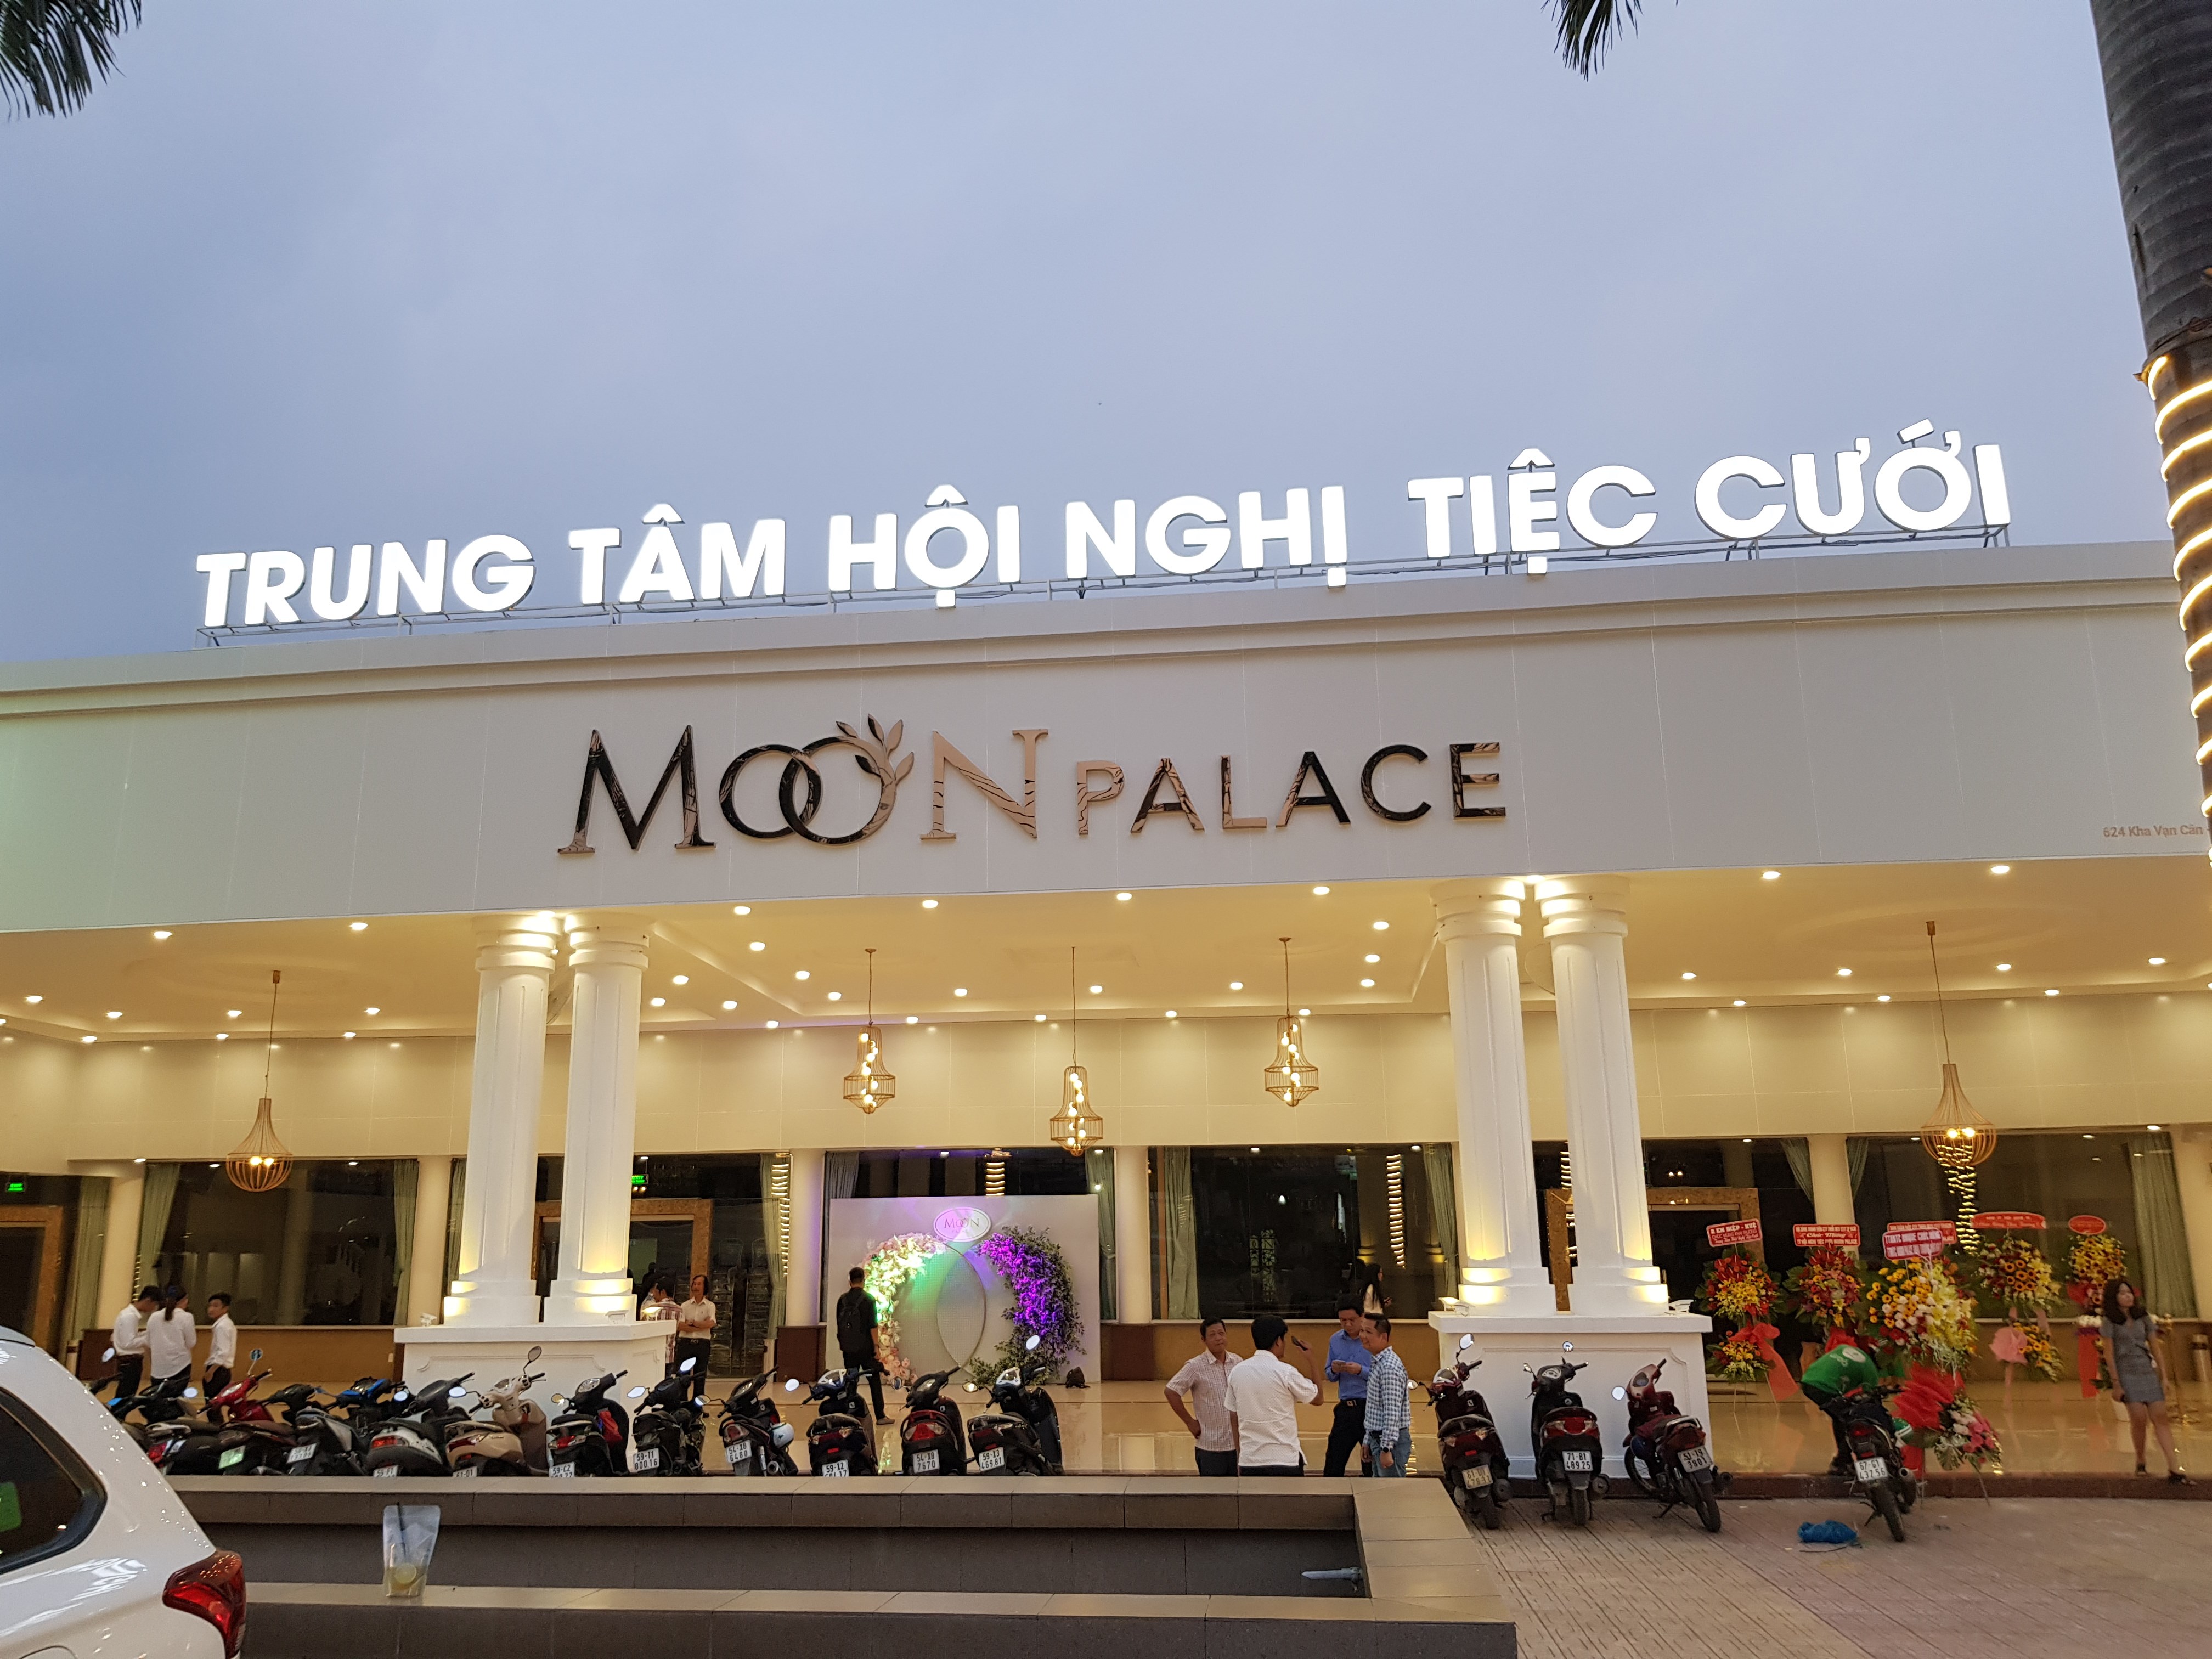 Trung tâm hội nghị & tiệc cưới Moon Palace tuyển dụng